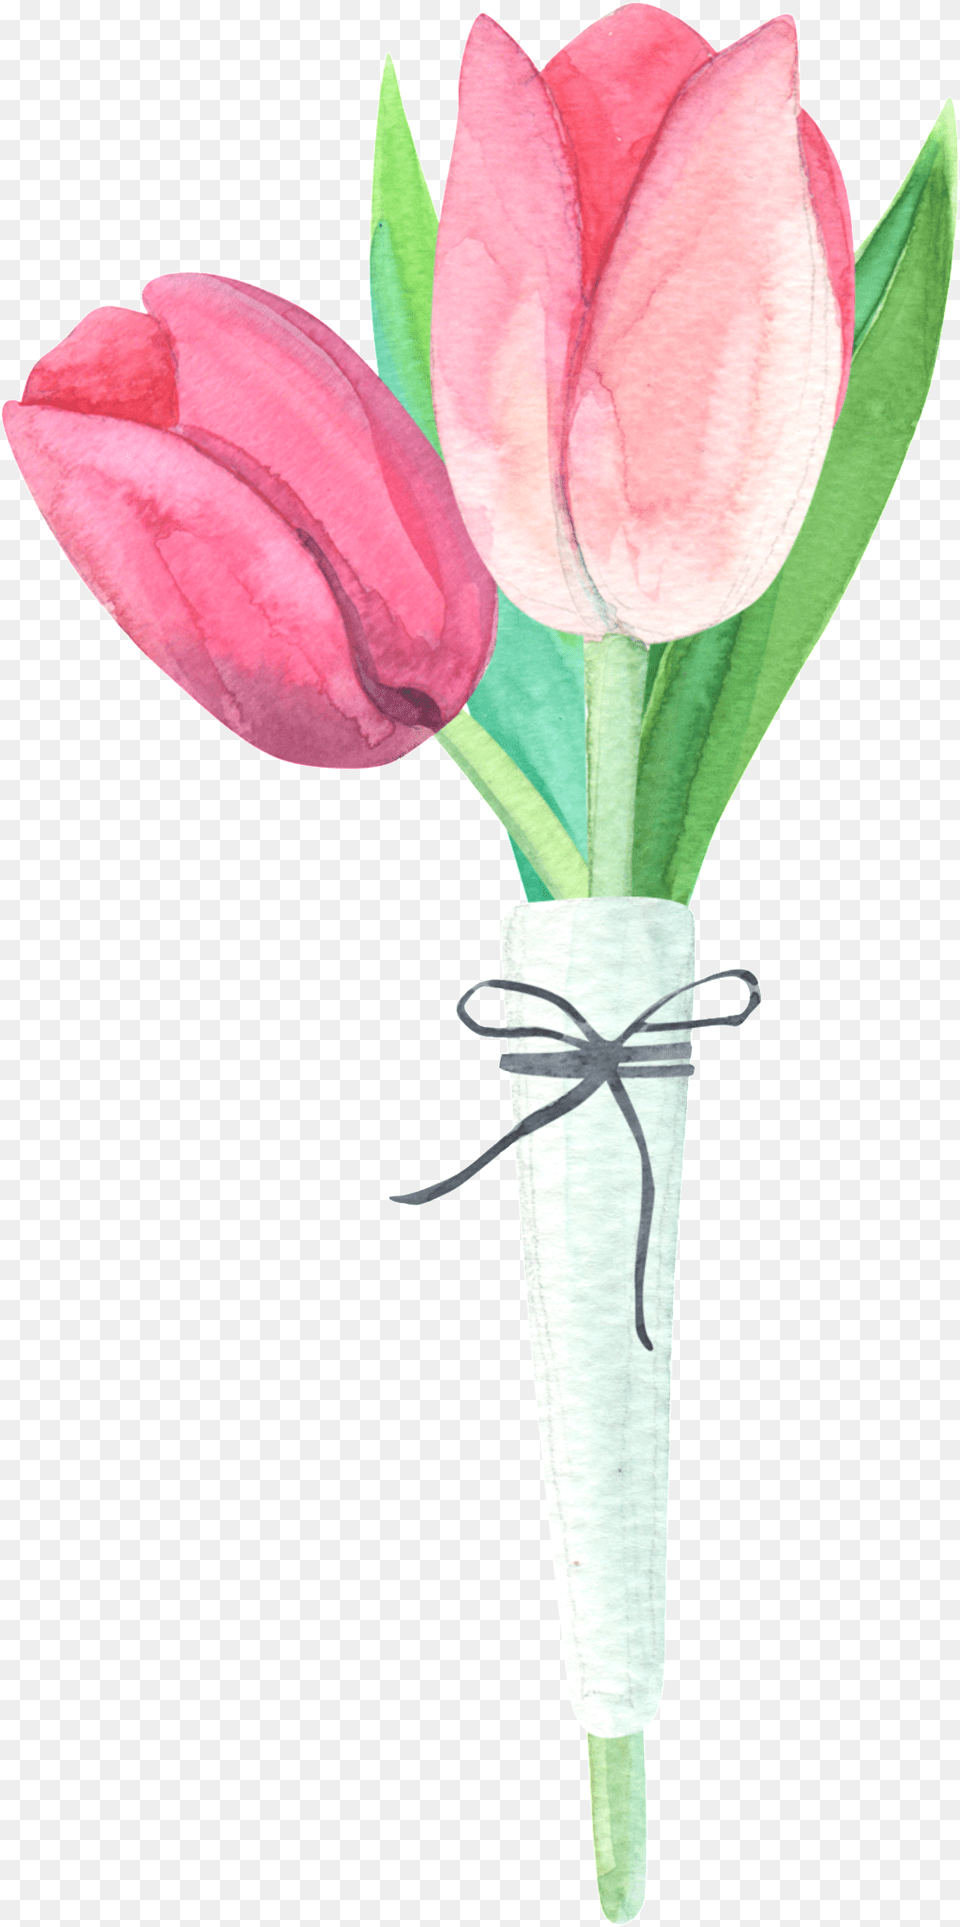 Watercolor Bouquet Material Tulip, Flower, Plant, Petal, Flower Bouquet Free Transparent Png